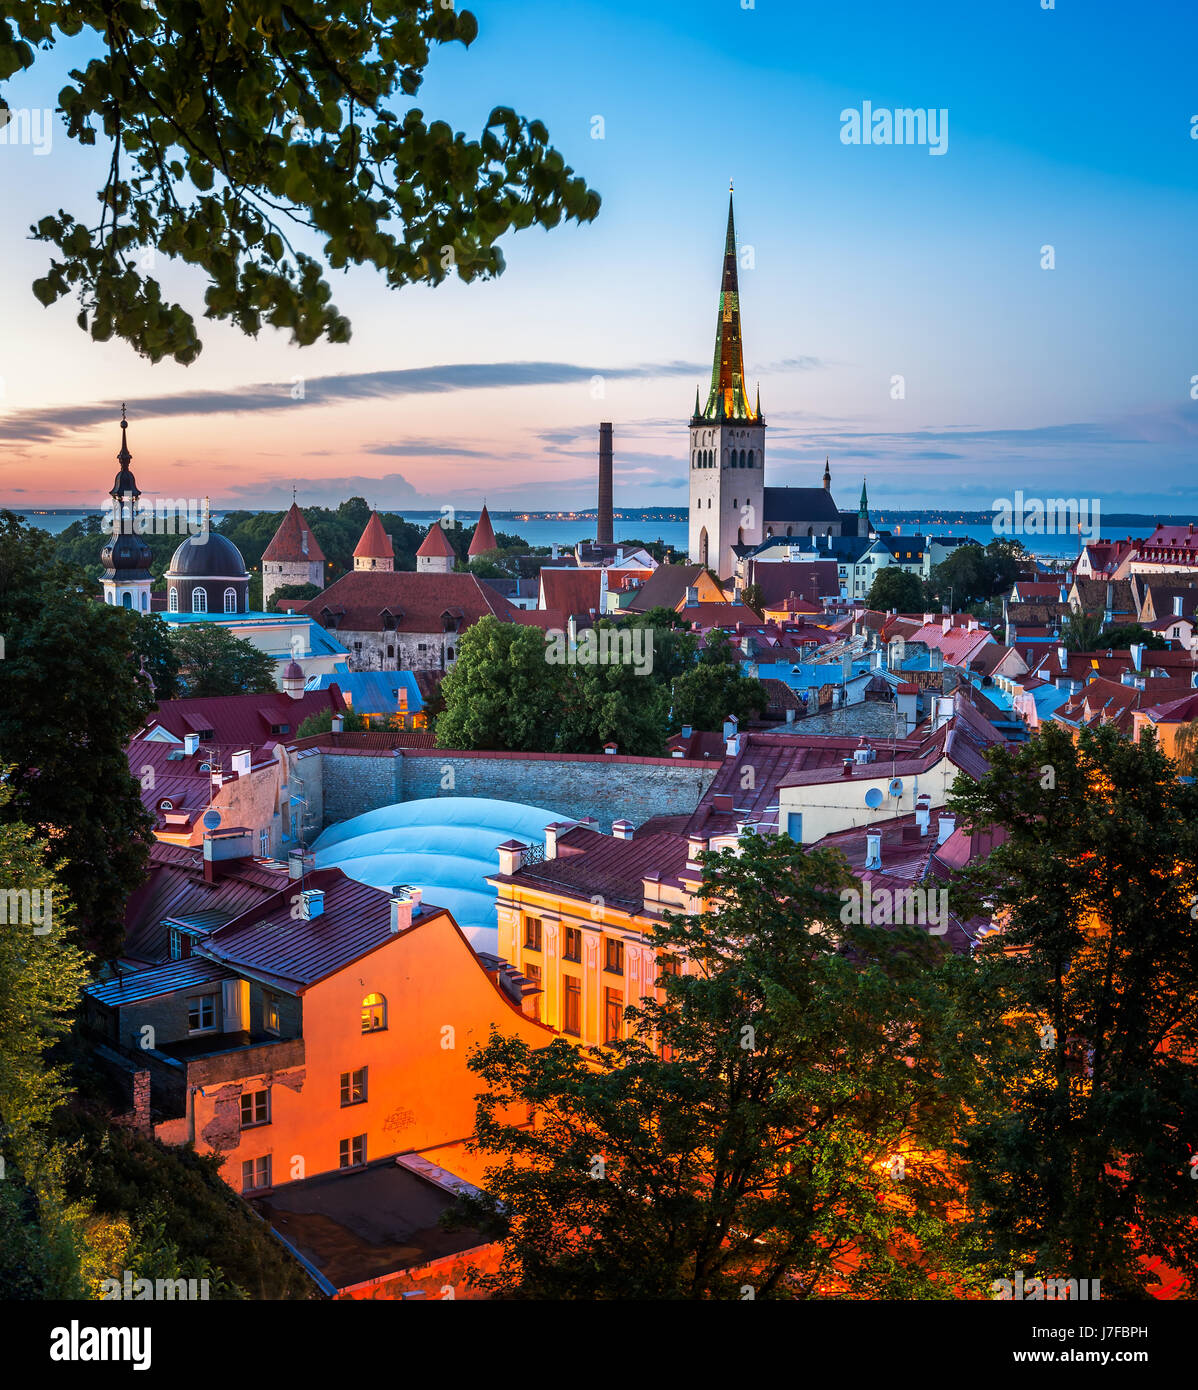 Vue aérienne de la vieille ville de Tallinn dans la soirée, Tallinn, Estonie Banque D'Images